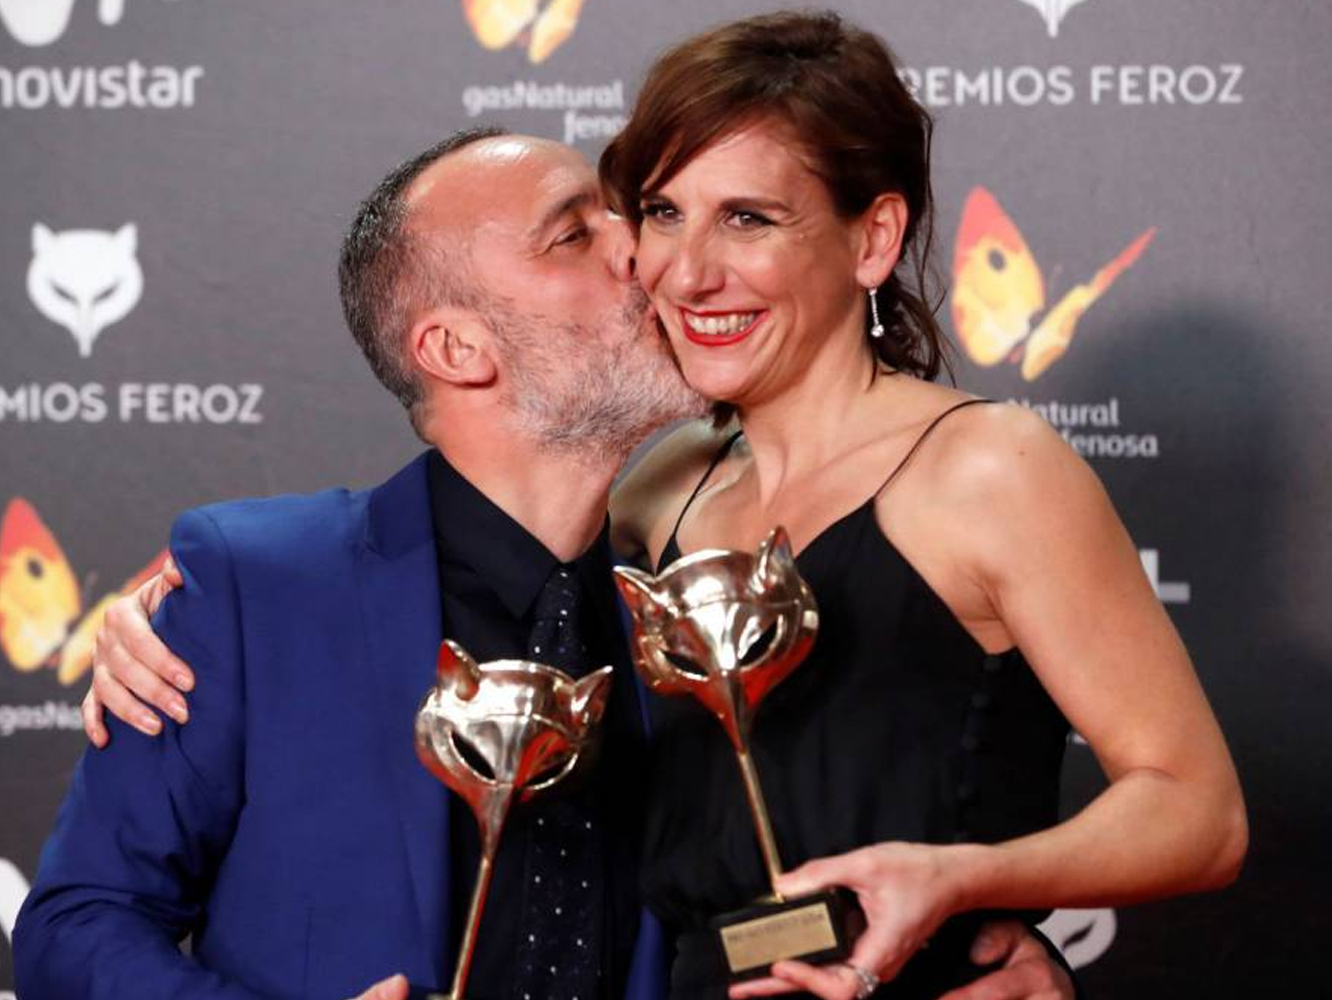  Premios Feroz 2018 | Movistar hace pleno en televisión y Carla Simón triunfa en cine